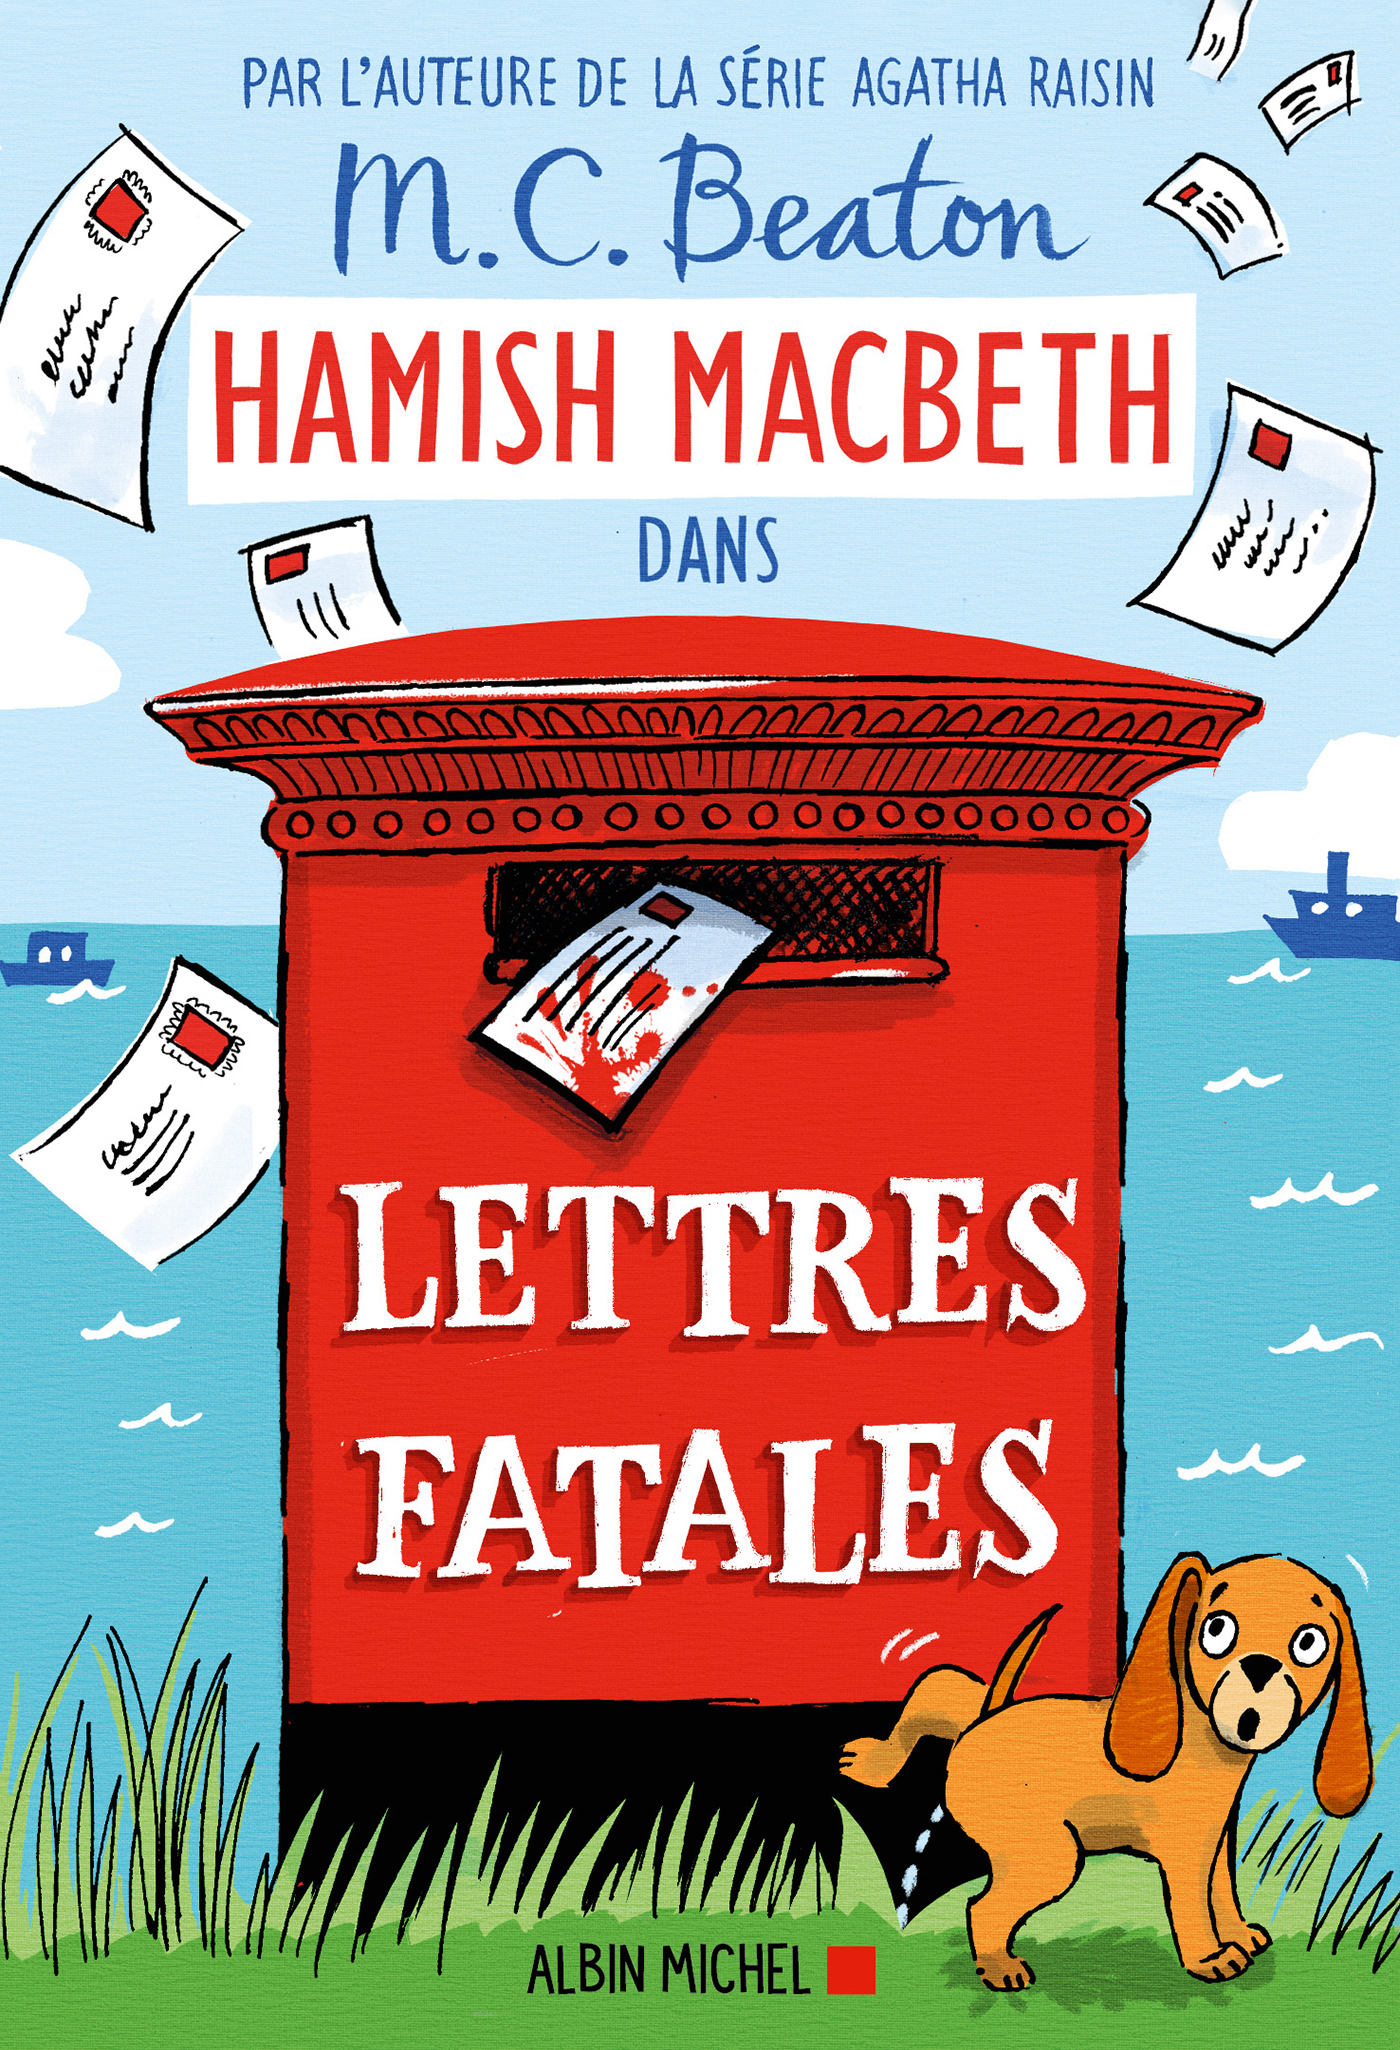 Couverture du livre Hamish Macbeth 19 - Lettres fatales